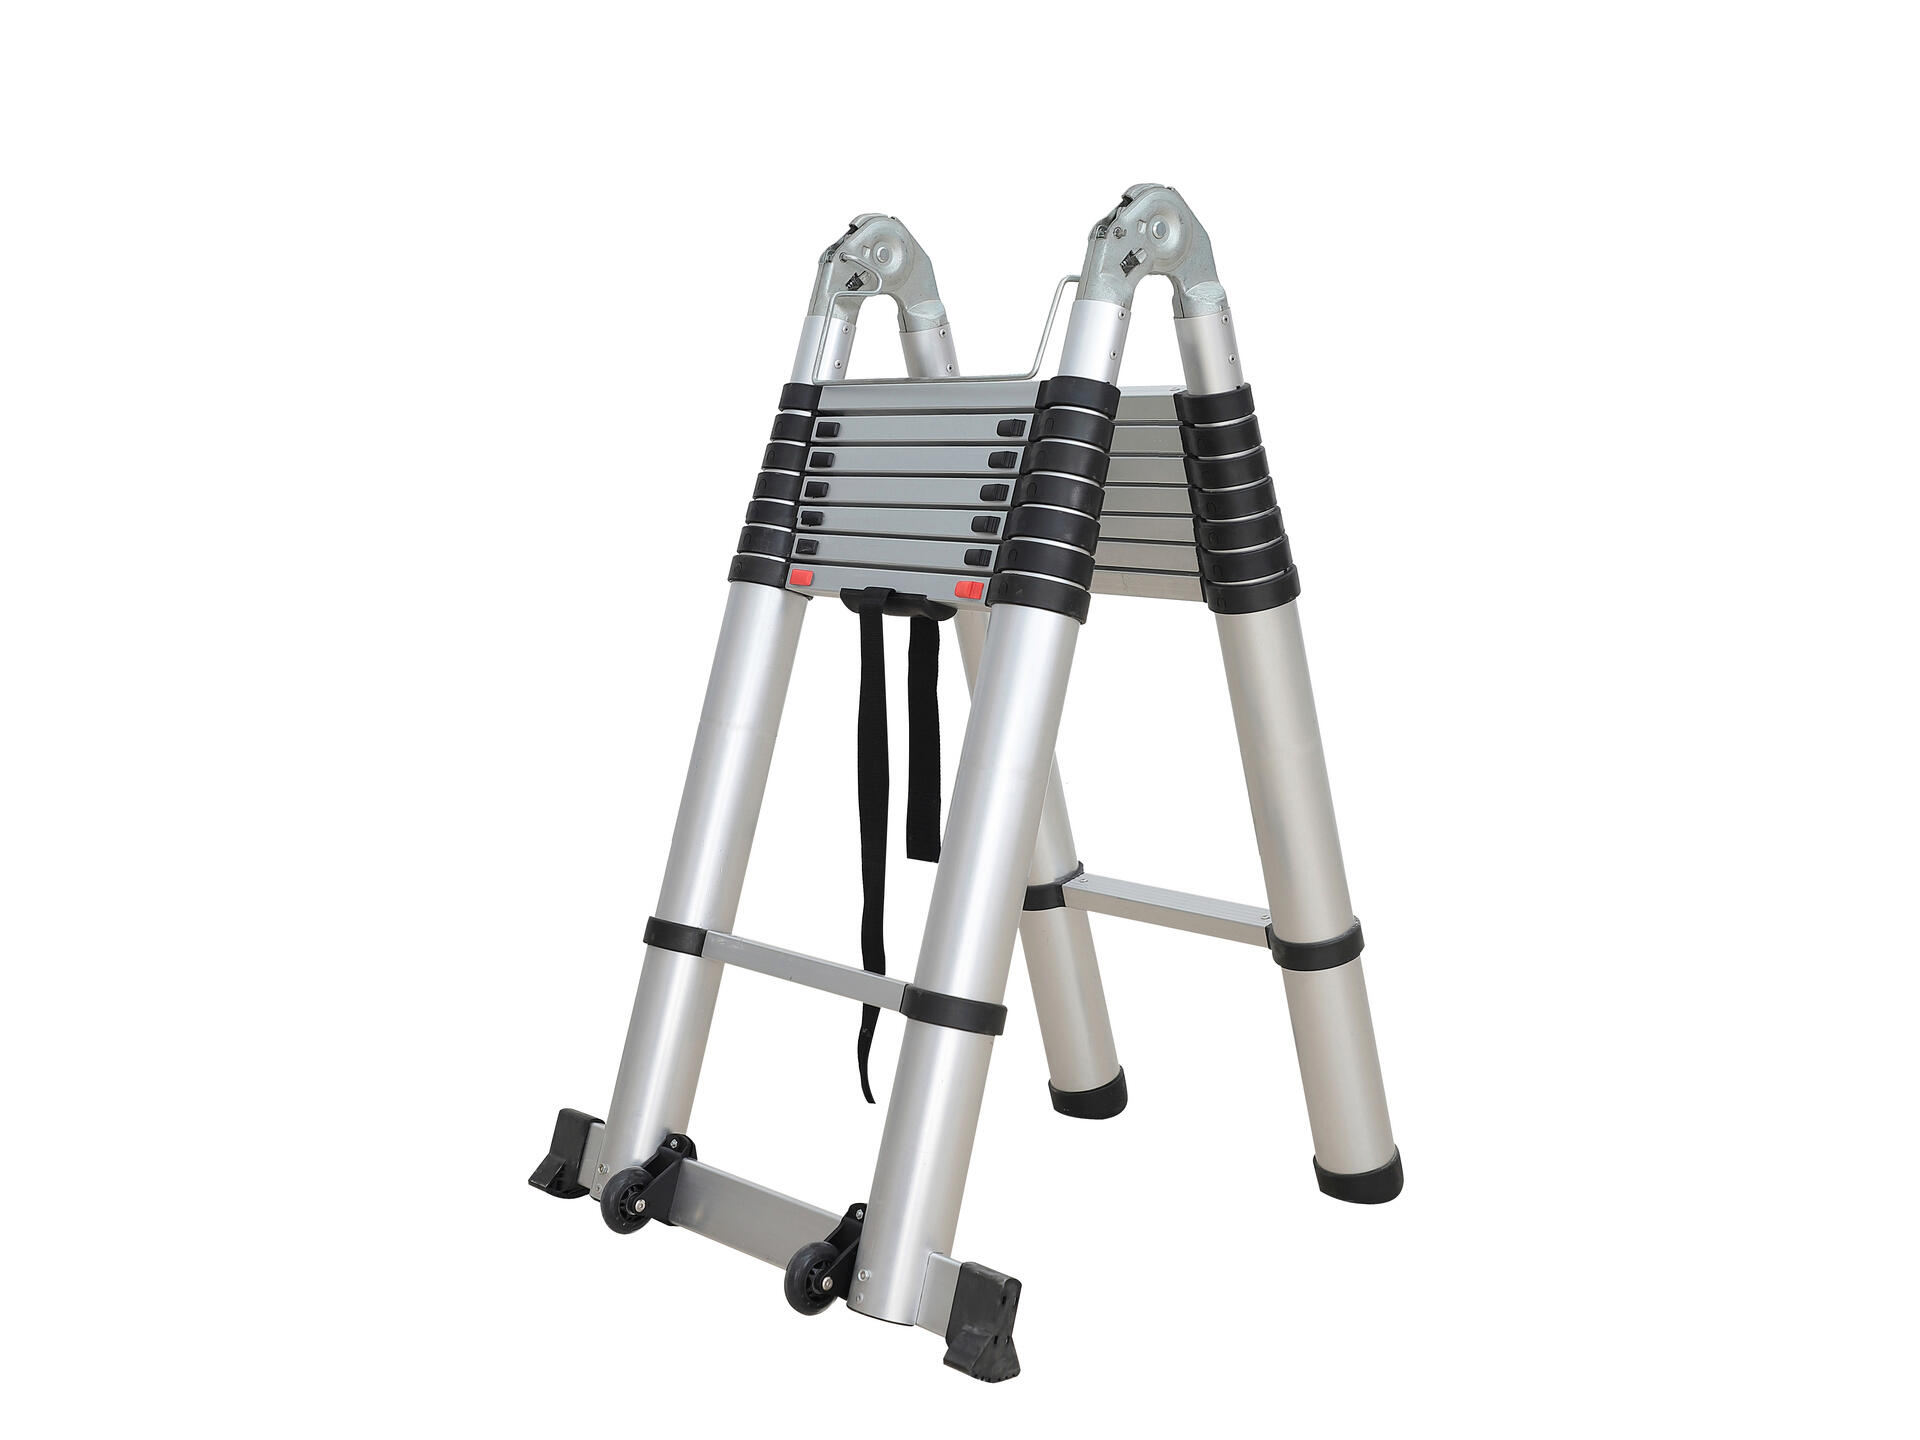 Verrijken welvaart Verval Diggers telescopische ladder 2x8 sporten | Hubo